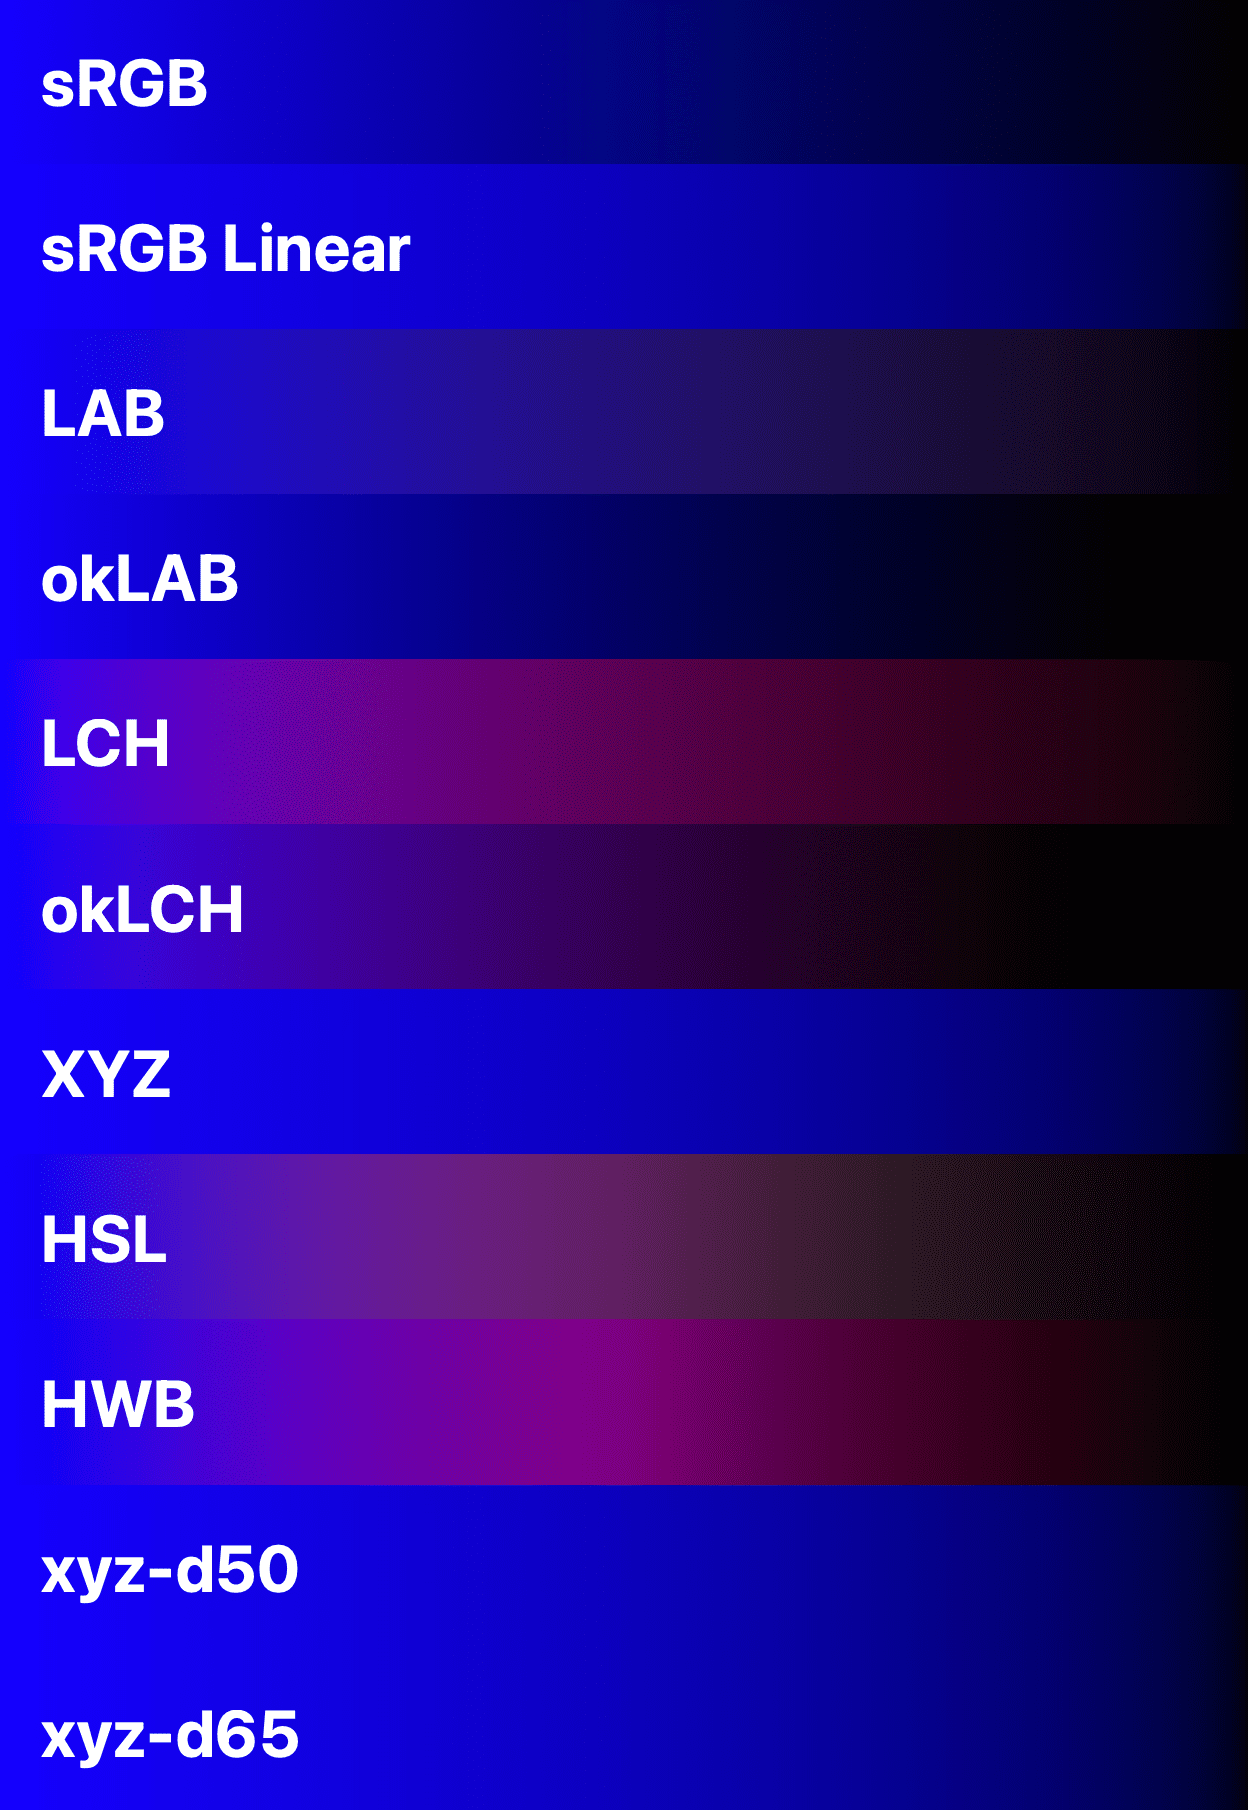 11 ruang warna ditampilkan untuk membandingkan biru dengan hitam.